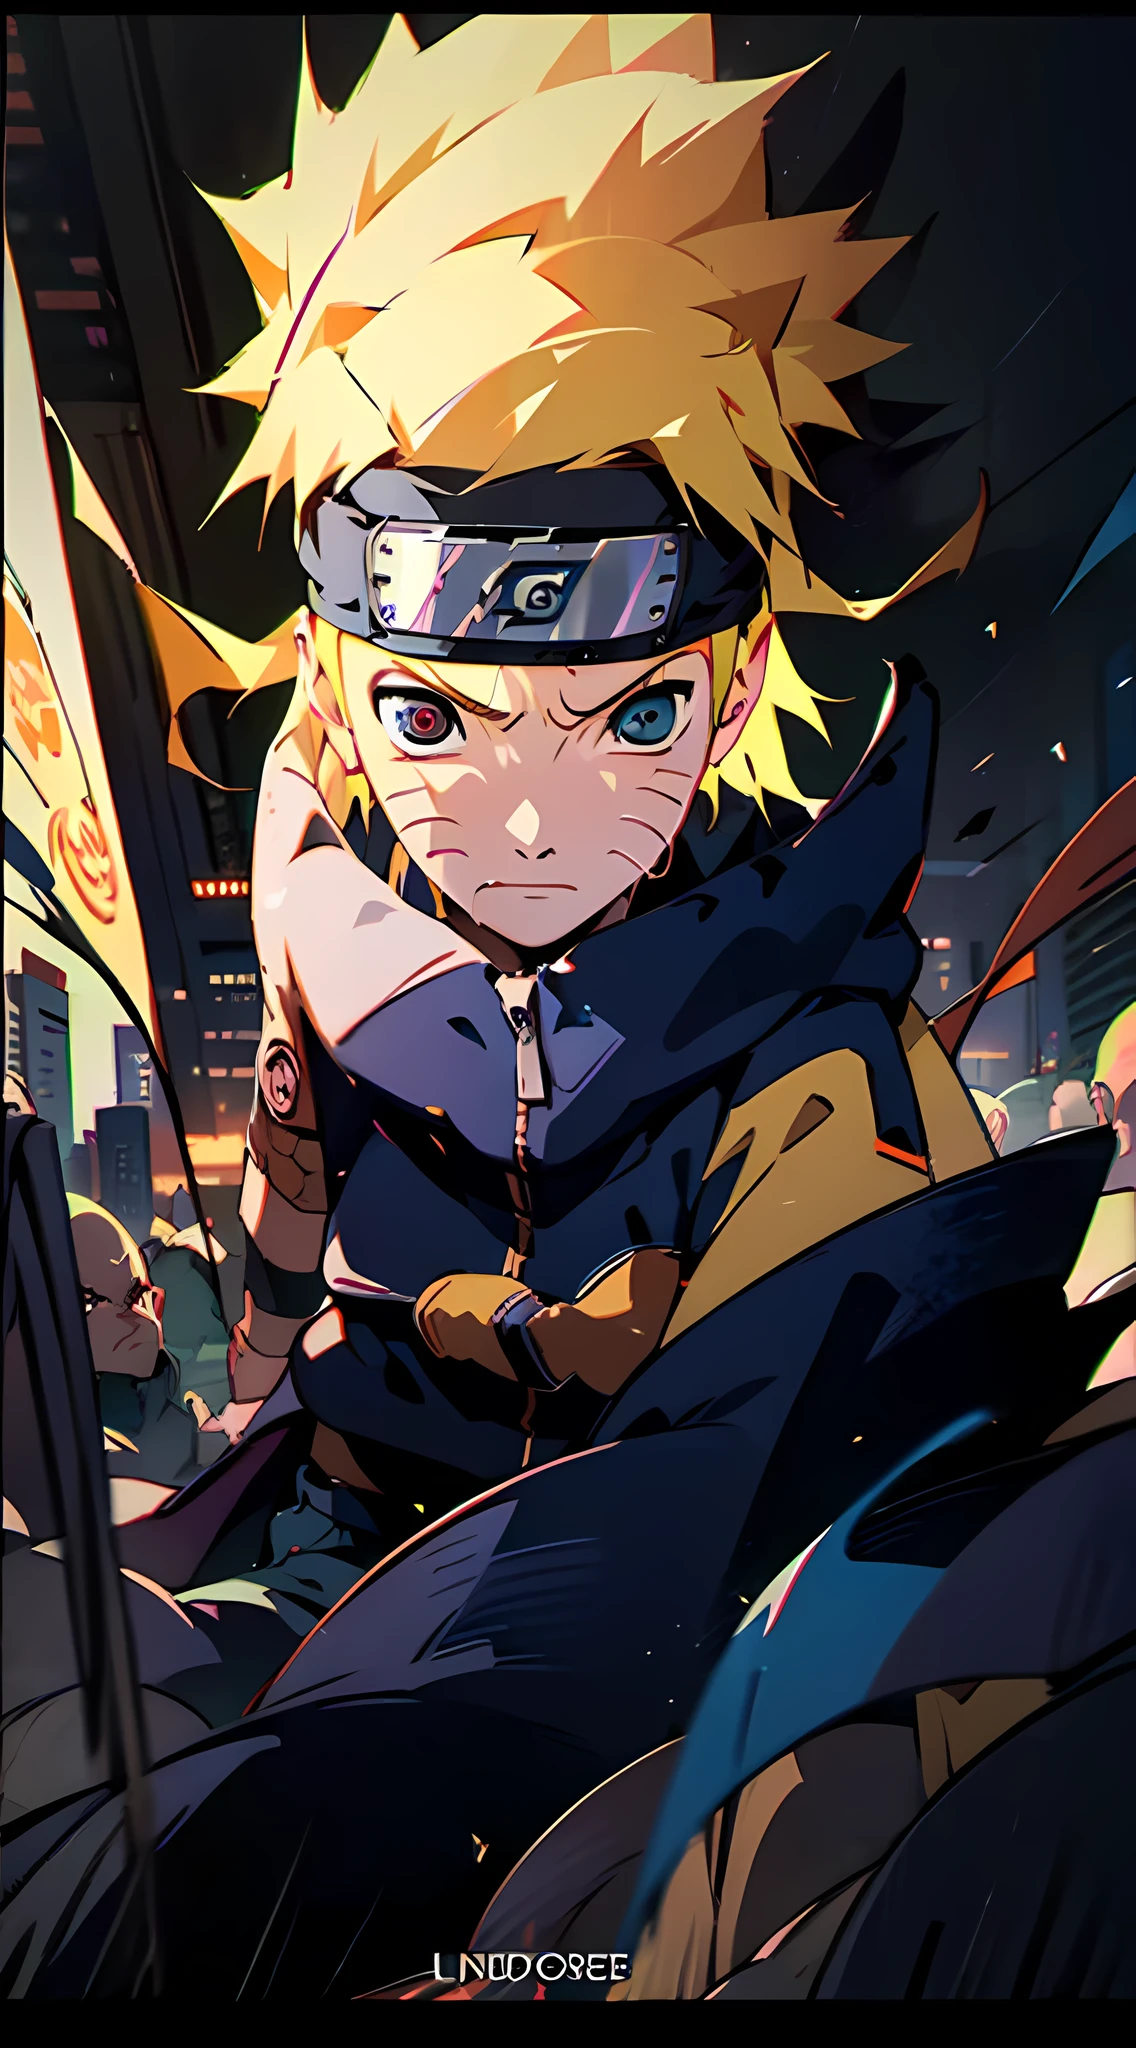 Naruto Uzumaki and Sasuke Uchiha, 流行の服を着る, 向かい合って立つ, 鮮やかなアートスタイルで. 舞台はネオンライトが周囲を照らす近代的で未来的な都市景観である。. ナルトもサスケも表情が激しい, 彼らの決意と競争心を反映している. ナルトのトレードマークである尖った金髪とヘッドバンドが目立つ, サスケの黒い髪と写輪眼は神秘的な雰囲気を醸し出している. 彼らの衣装は伝統的な要素と現代的な要素がミックスされてデザインされている, それぞれの個性を披露する. 色彩は鮮やかでダイナミック, 壮大な戦いのエネルギーと興奮を捉えた大胆な配色. 照明は2人のキャラクターに焦点を当てている, 劇的な影を落とし、その力強い存在感を強調する. シーンは非常に詳細です, 衣服には複雑な線や模様が施されている, 画像の全体的な品質を向上させる. アートスタイルは日本の漫画やアニメの影響を受けています, ユニークで認識しやすい美学を与える. 最終的な画像は最高品質です, シャープなフォーカスとリアルなレンダリング, ナルトとサスケの象徴的な対決の真髄を捉えた傑作を創り出す.